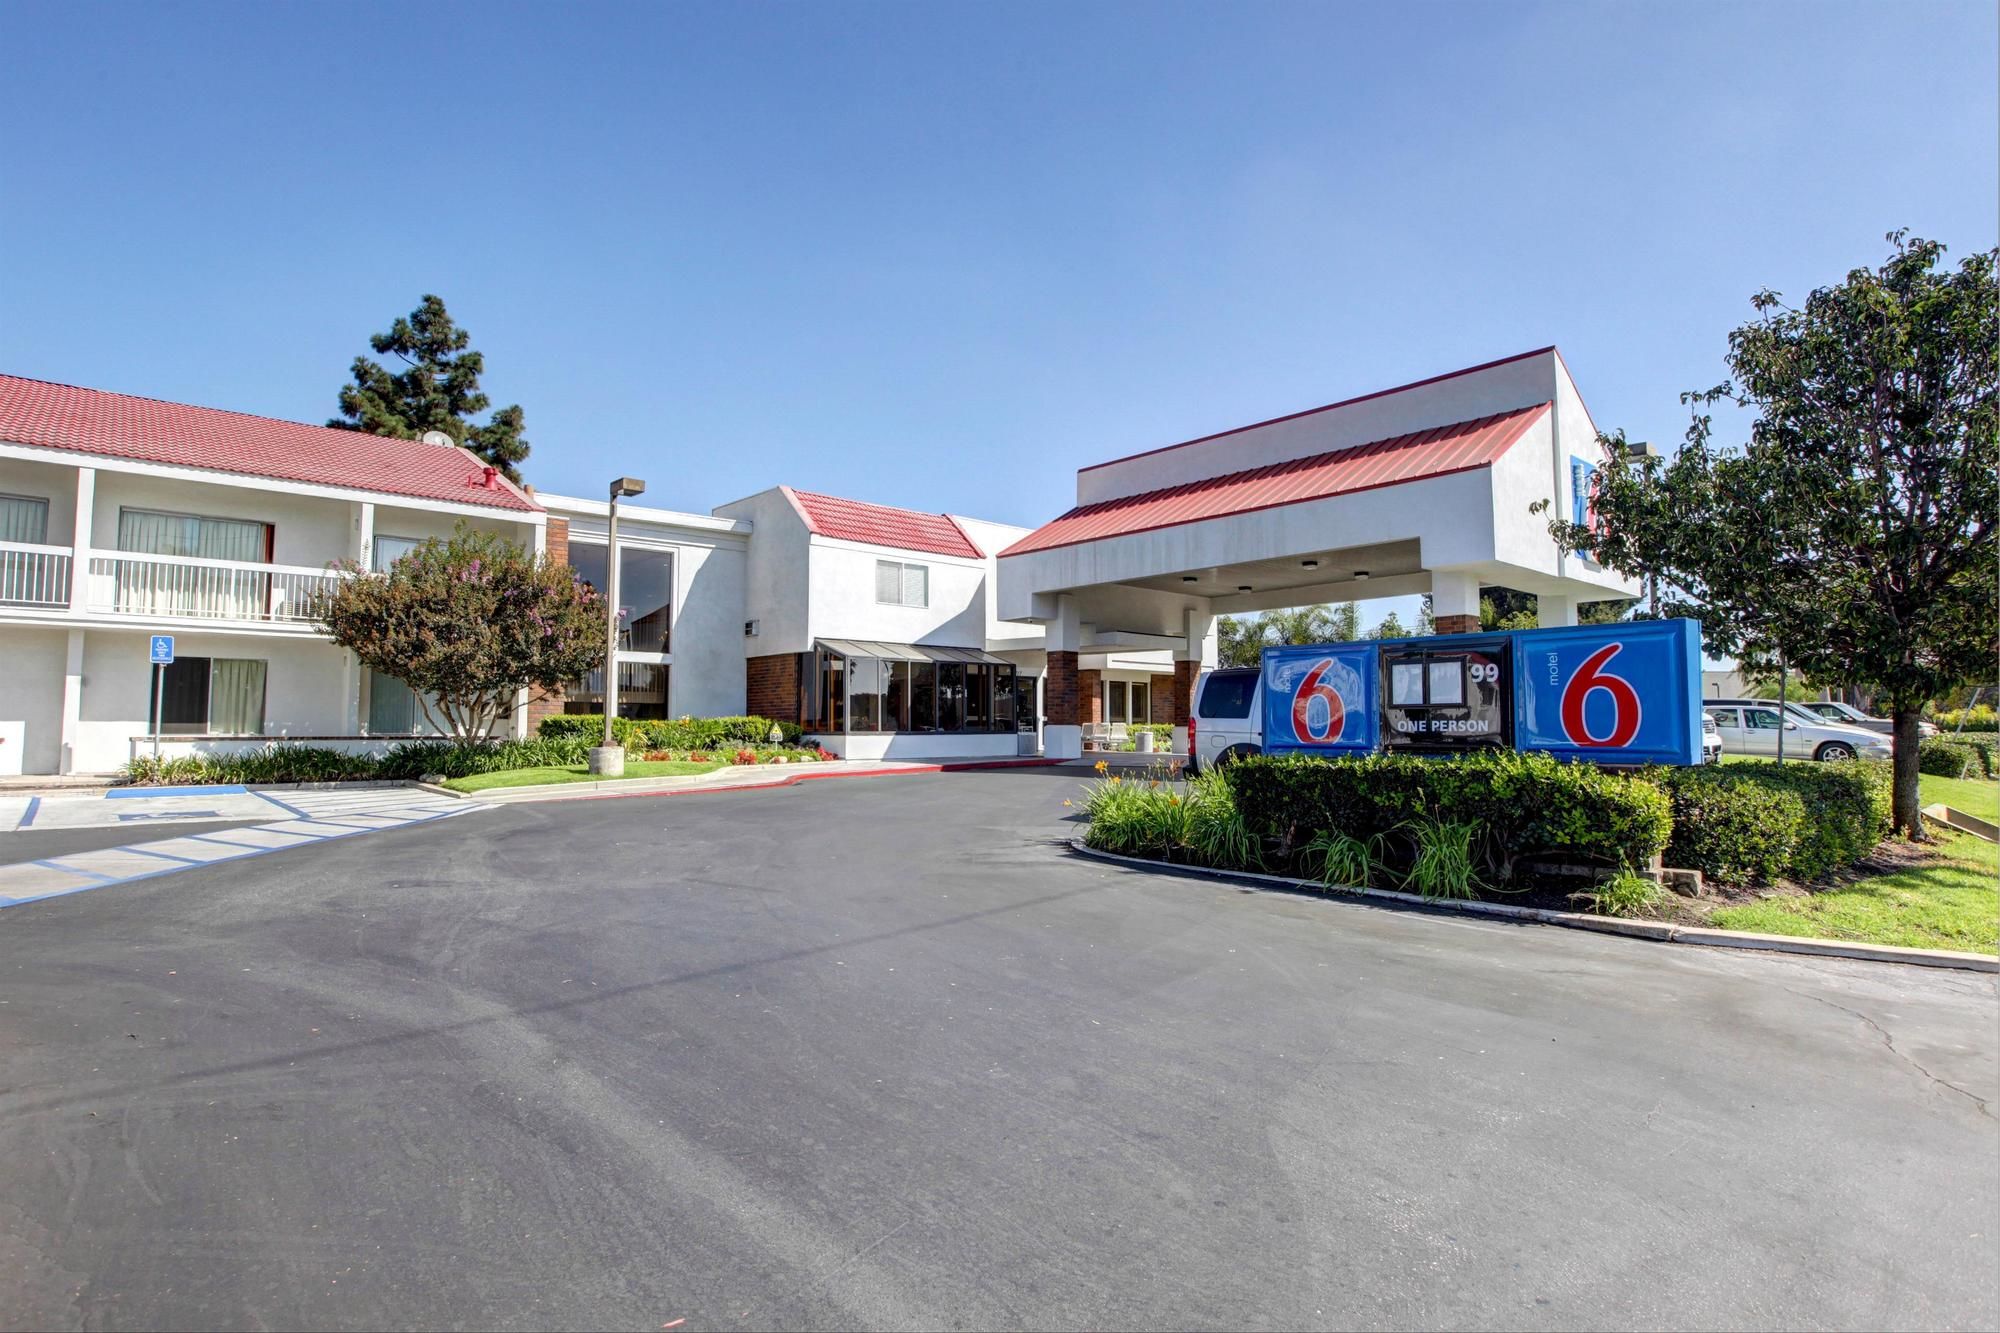 Motel 6 Irvine Orange County Airport